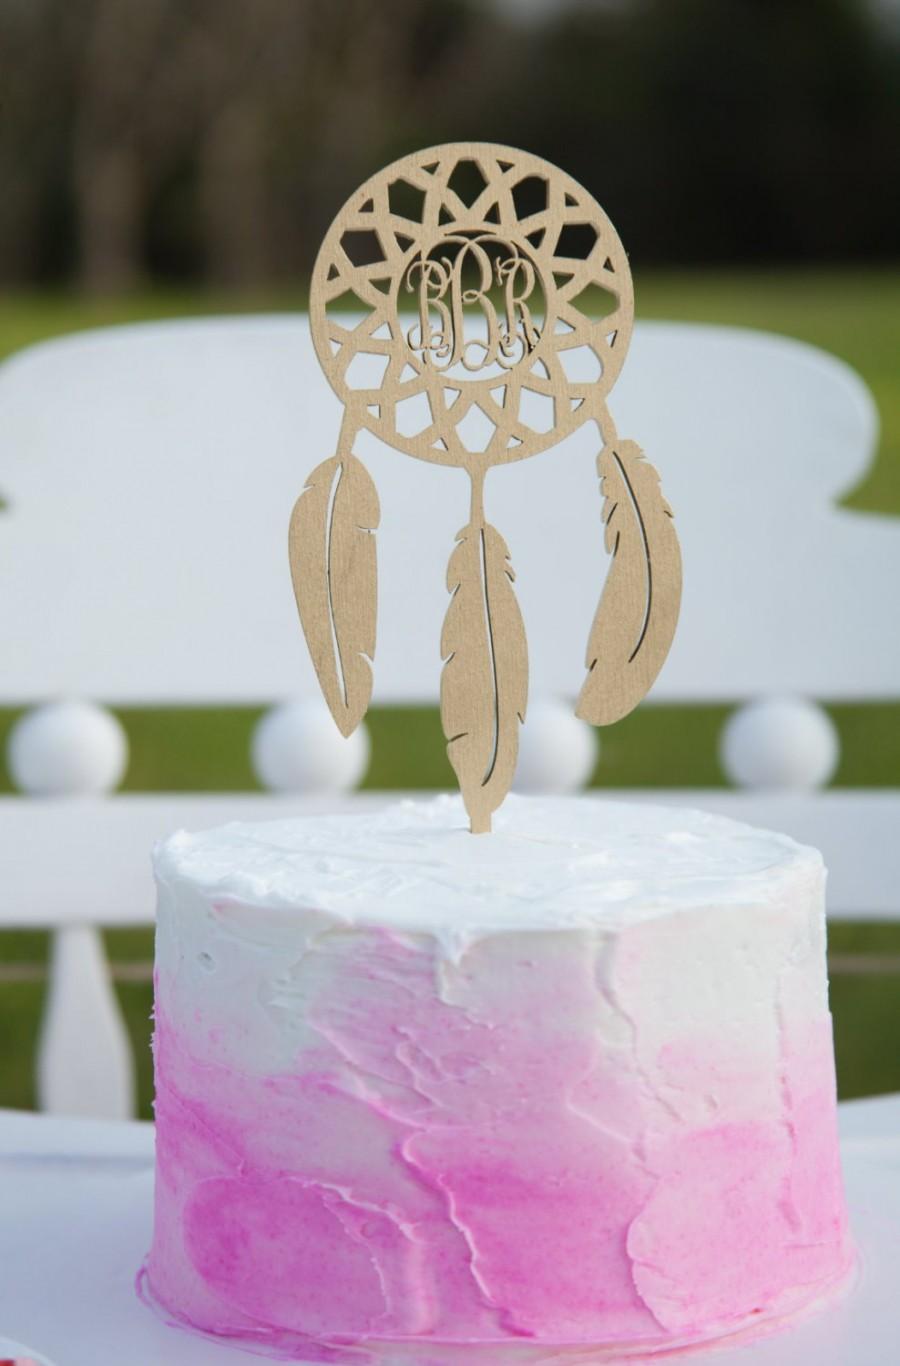 Hochzeit - Personalized Cake Topper - Monogram Dream Catcher Cake Topper - Birthday - Wedding - Wooden